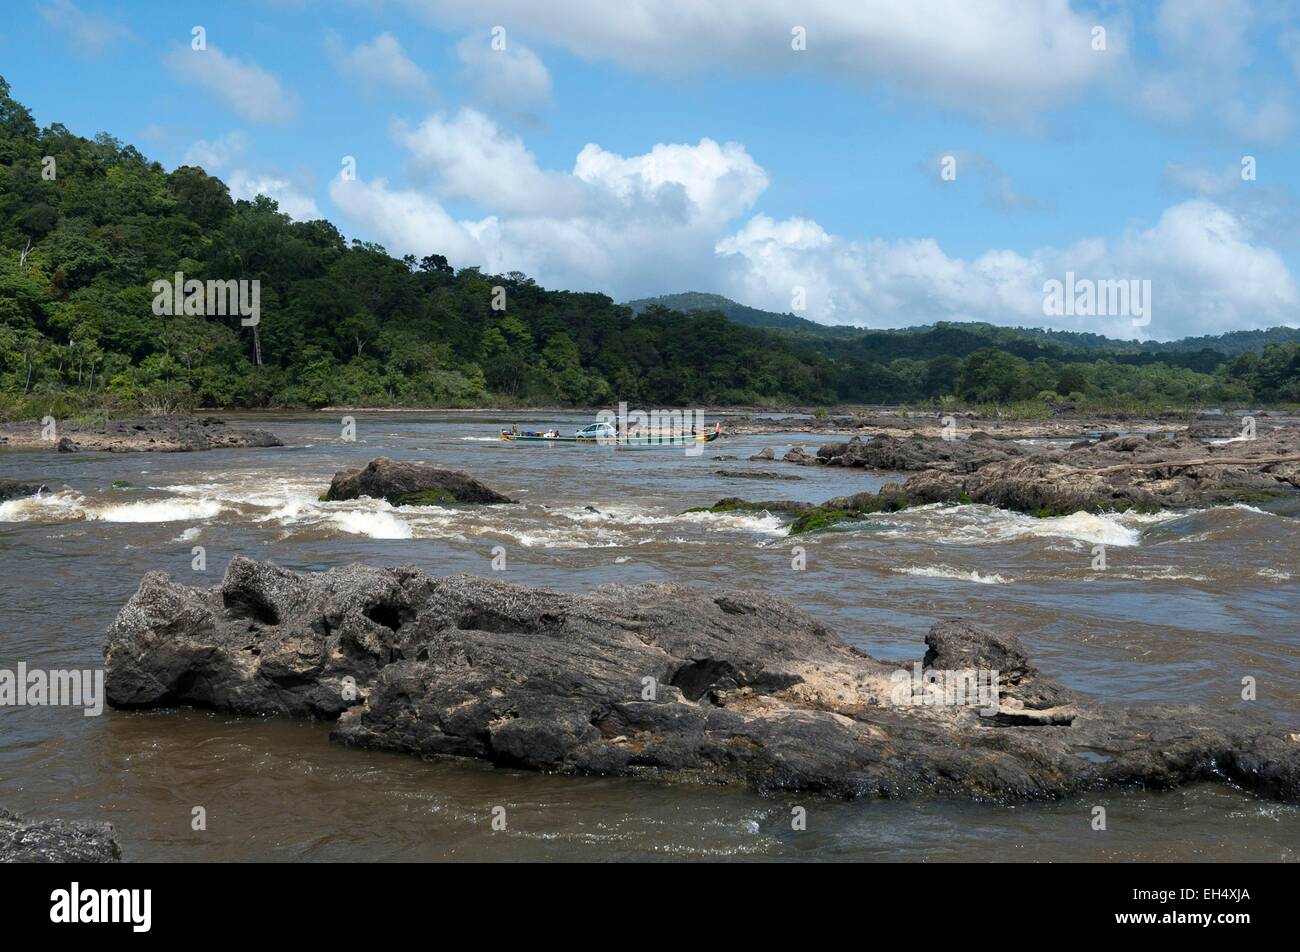 Frankreich, Französisch-Guayana, Parc Amazonien de Guyane (Guayana Amazonas Park), Tapanahony River und Lawa River Mündung immer hier die Maroni-Fluss, Stromschnellen (Sprung) genannt Sprung von den großen Reichtum, ein Auto auf einer Piroge flussaufwärts geladen Stockfoto